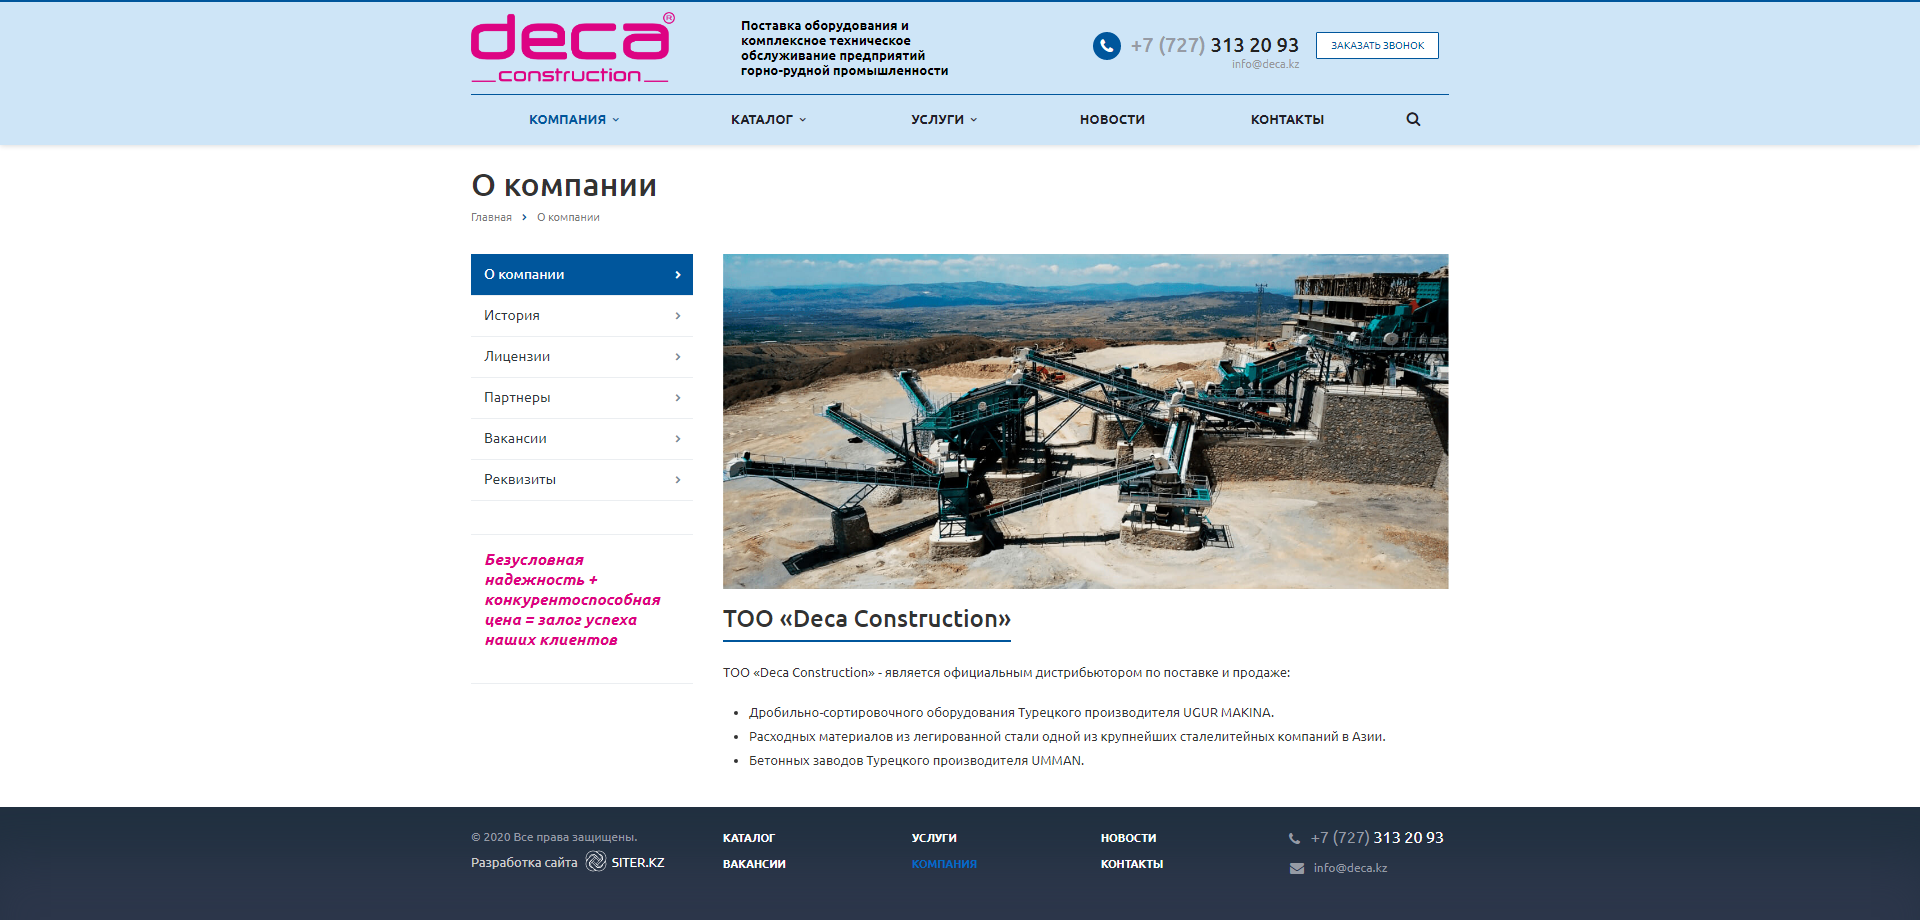 сайт поставки оборудования и комплексного технического обслуживания